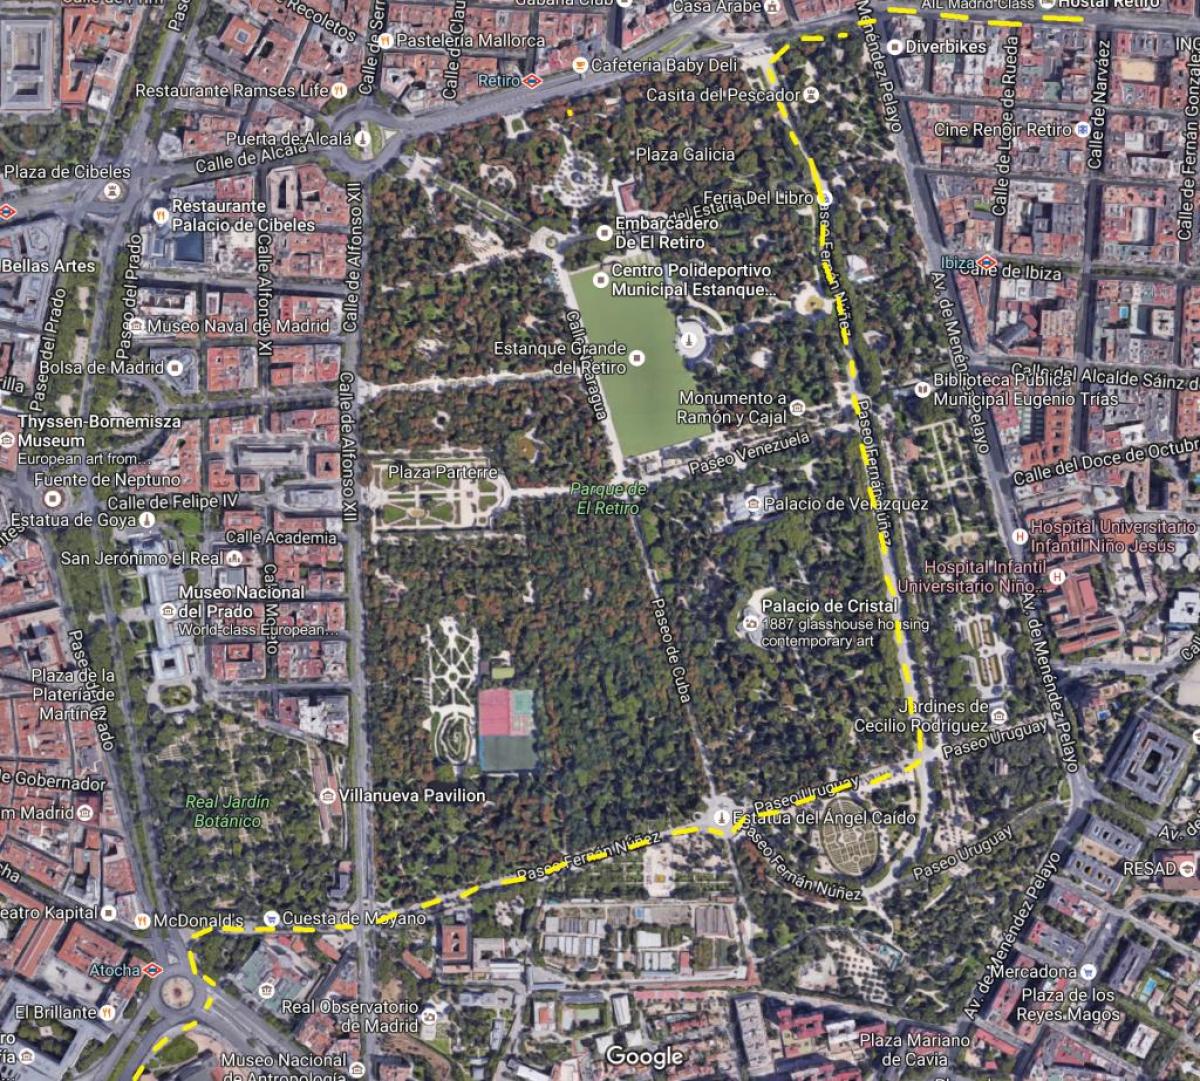 retiro park, Madrid Karte